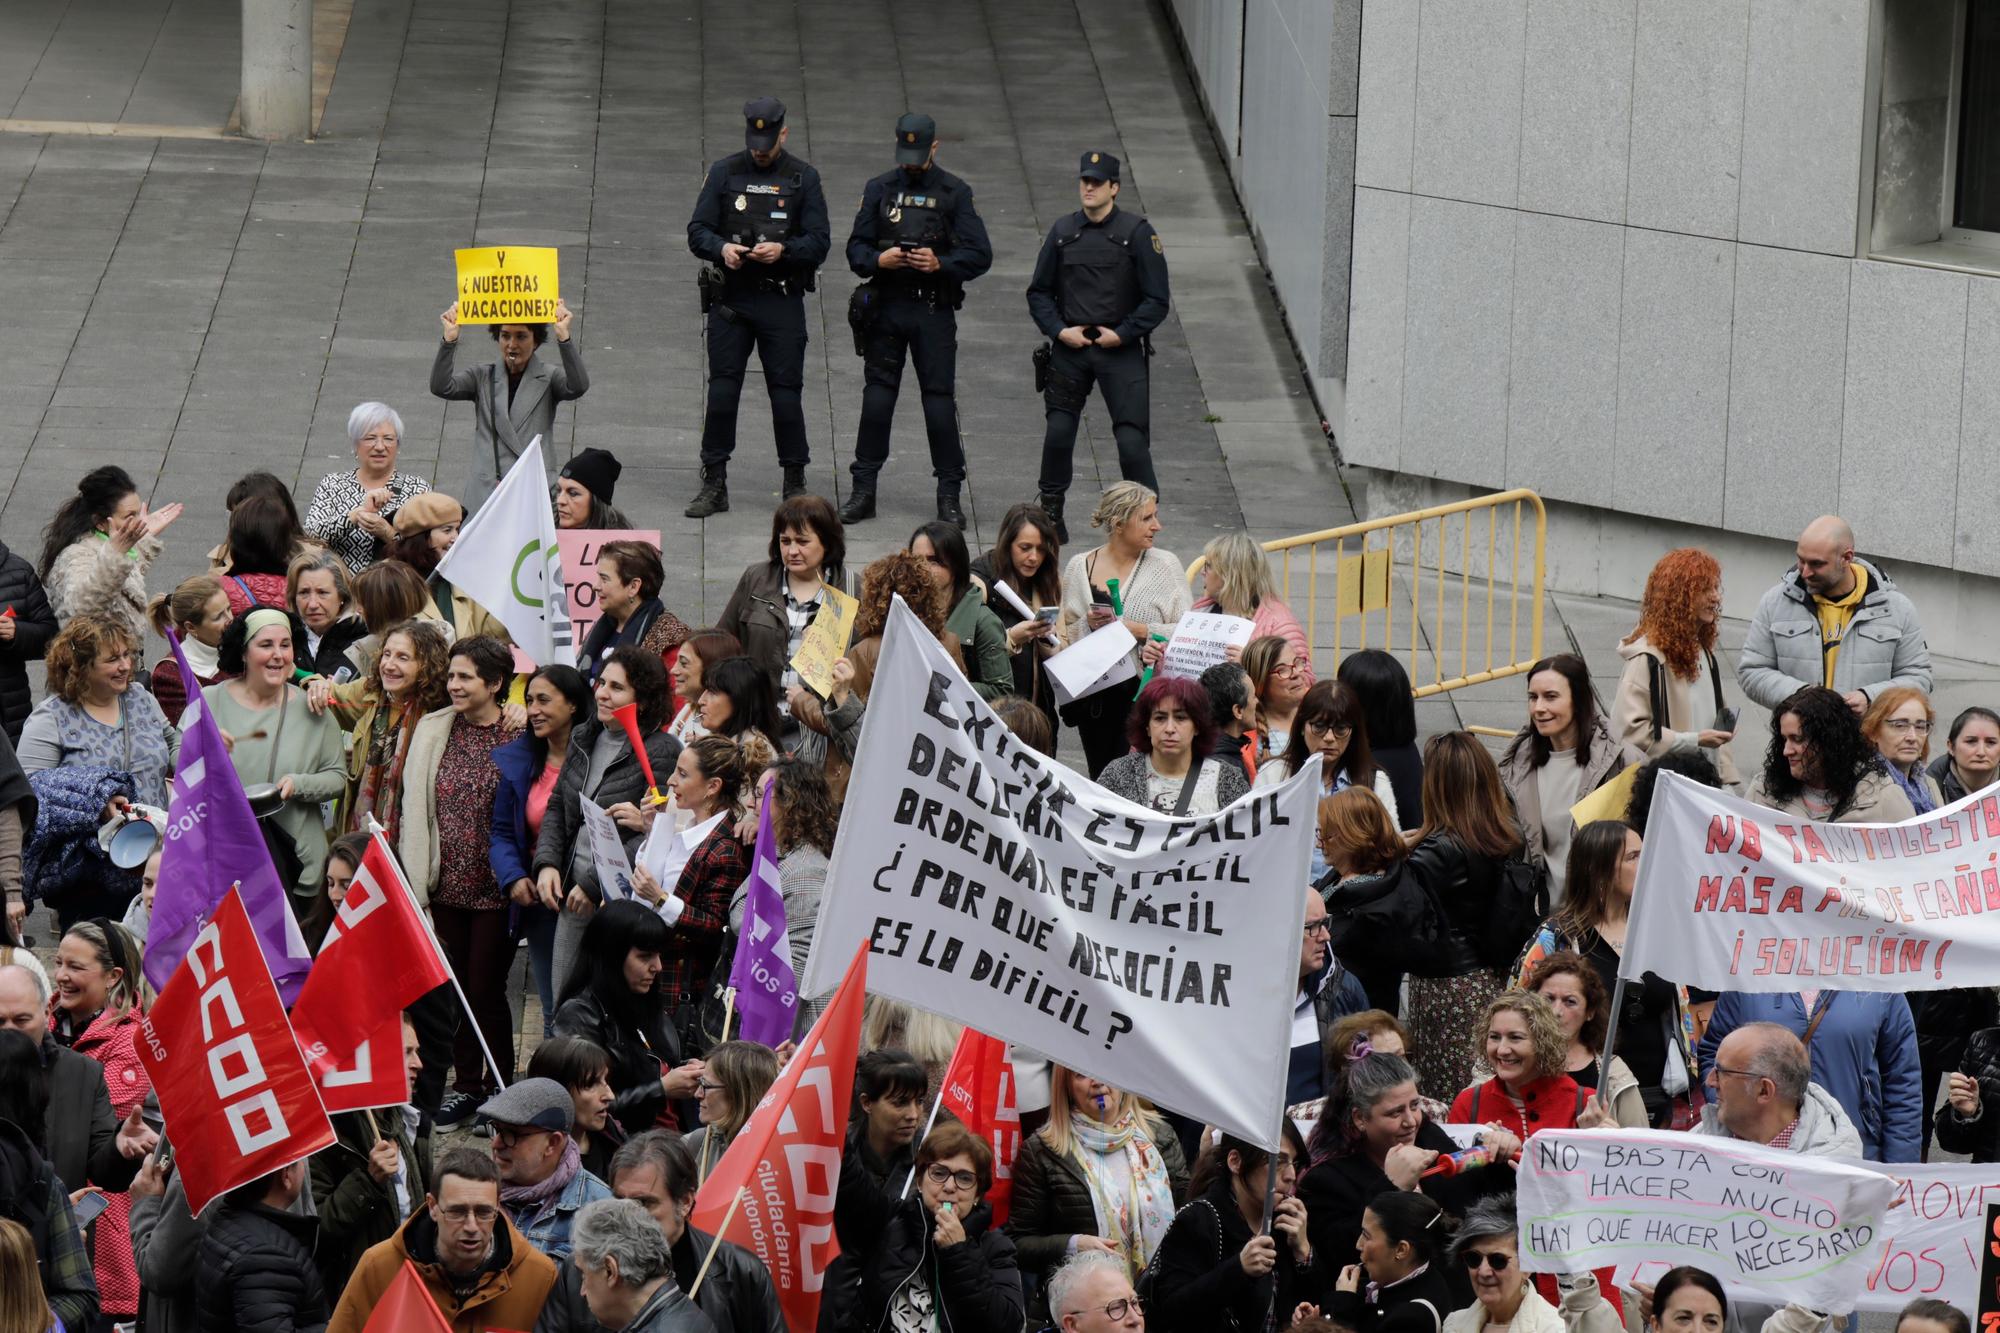 En imágenes: Multitudinaria protesta de los trabajadores del ERA: "Nuestras vacaciones no son un trueque electoral"